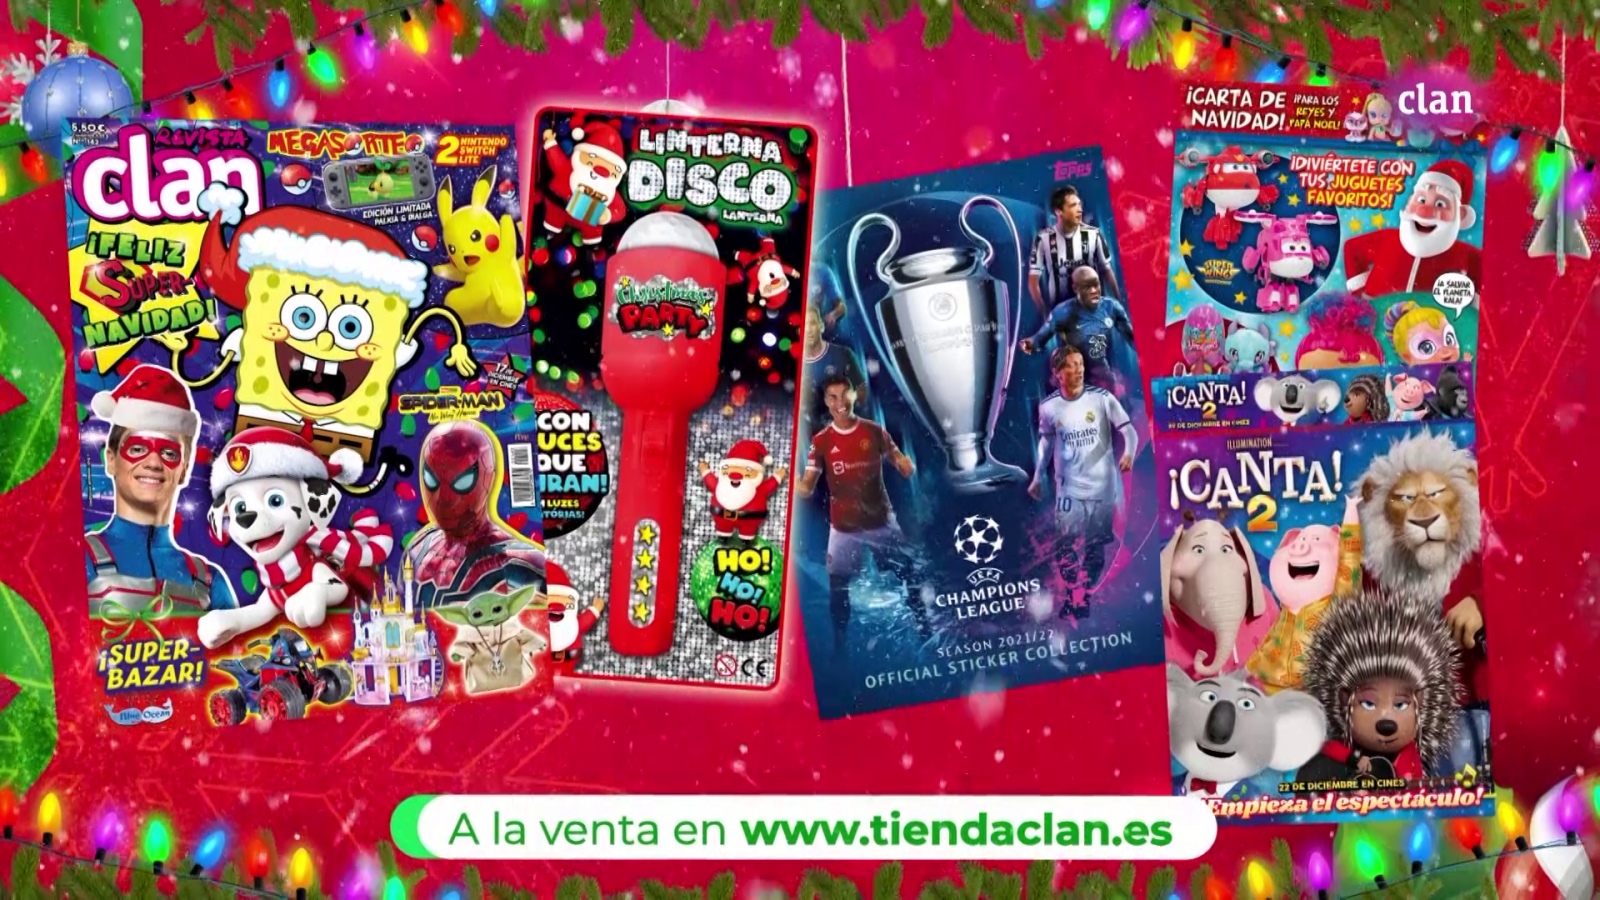 Arrepentimiento Empleado Milagroso Llega la Navidad a la nueva revista Clan! - Clan TV - RTVE.es